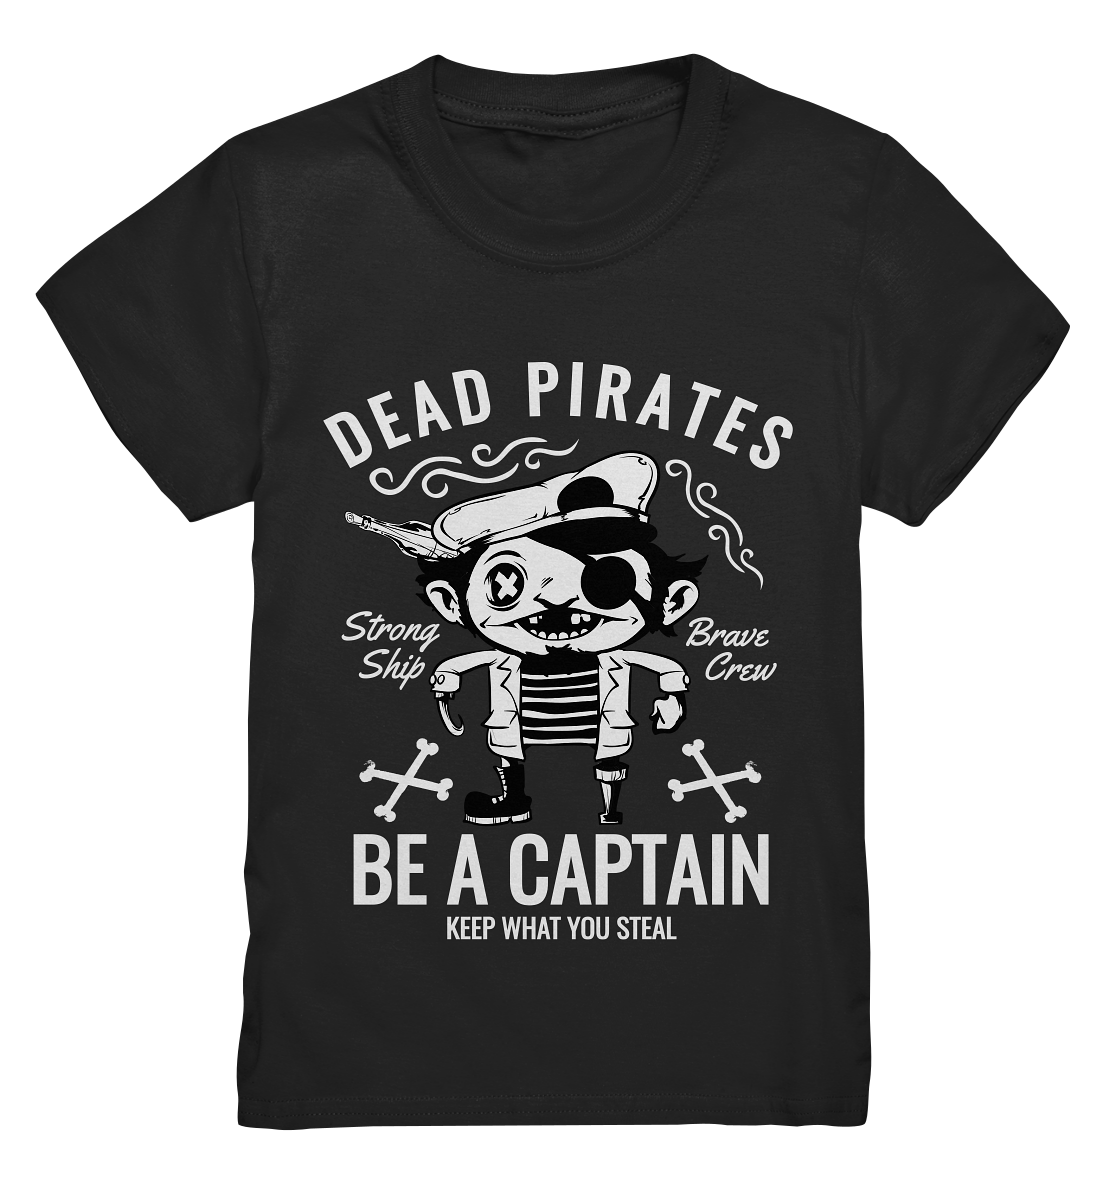 Dead Pirates. Be a captain. - Kids Premium Shirt